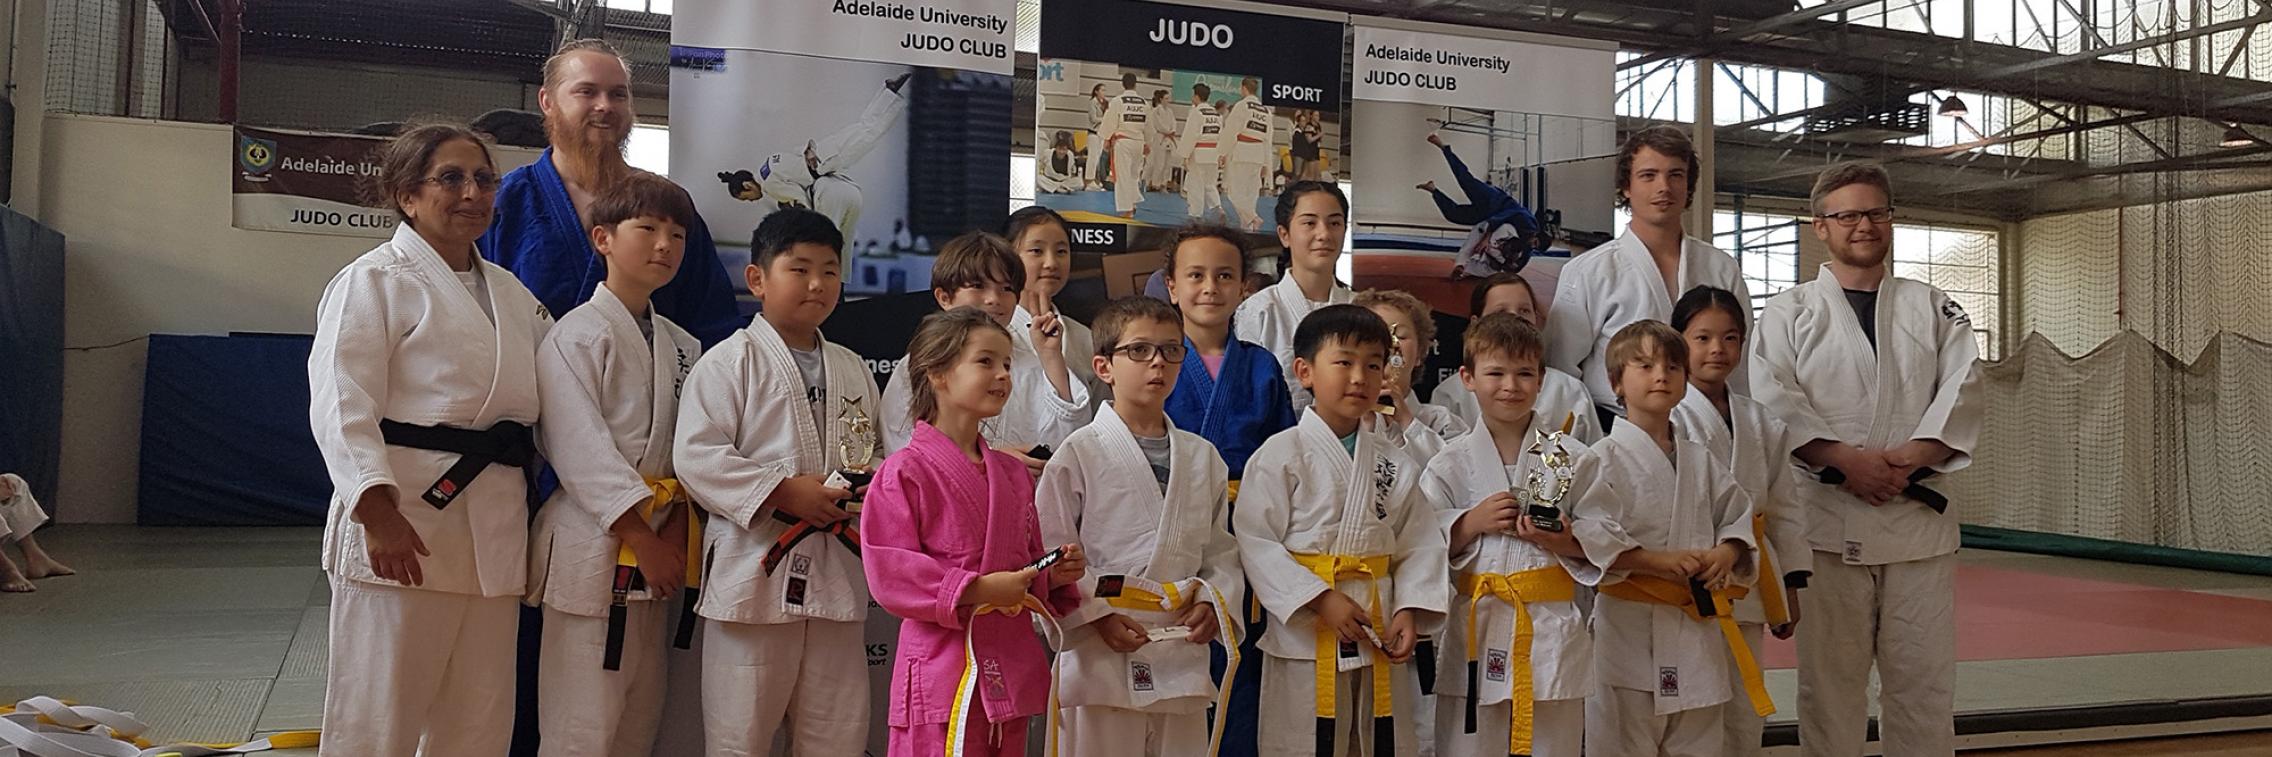 Judo4Kids Group Photo